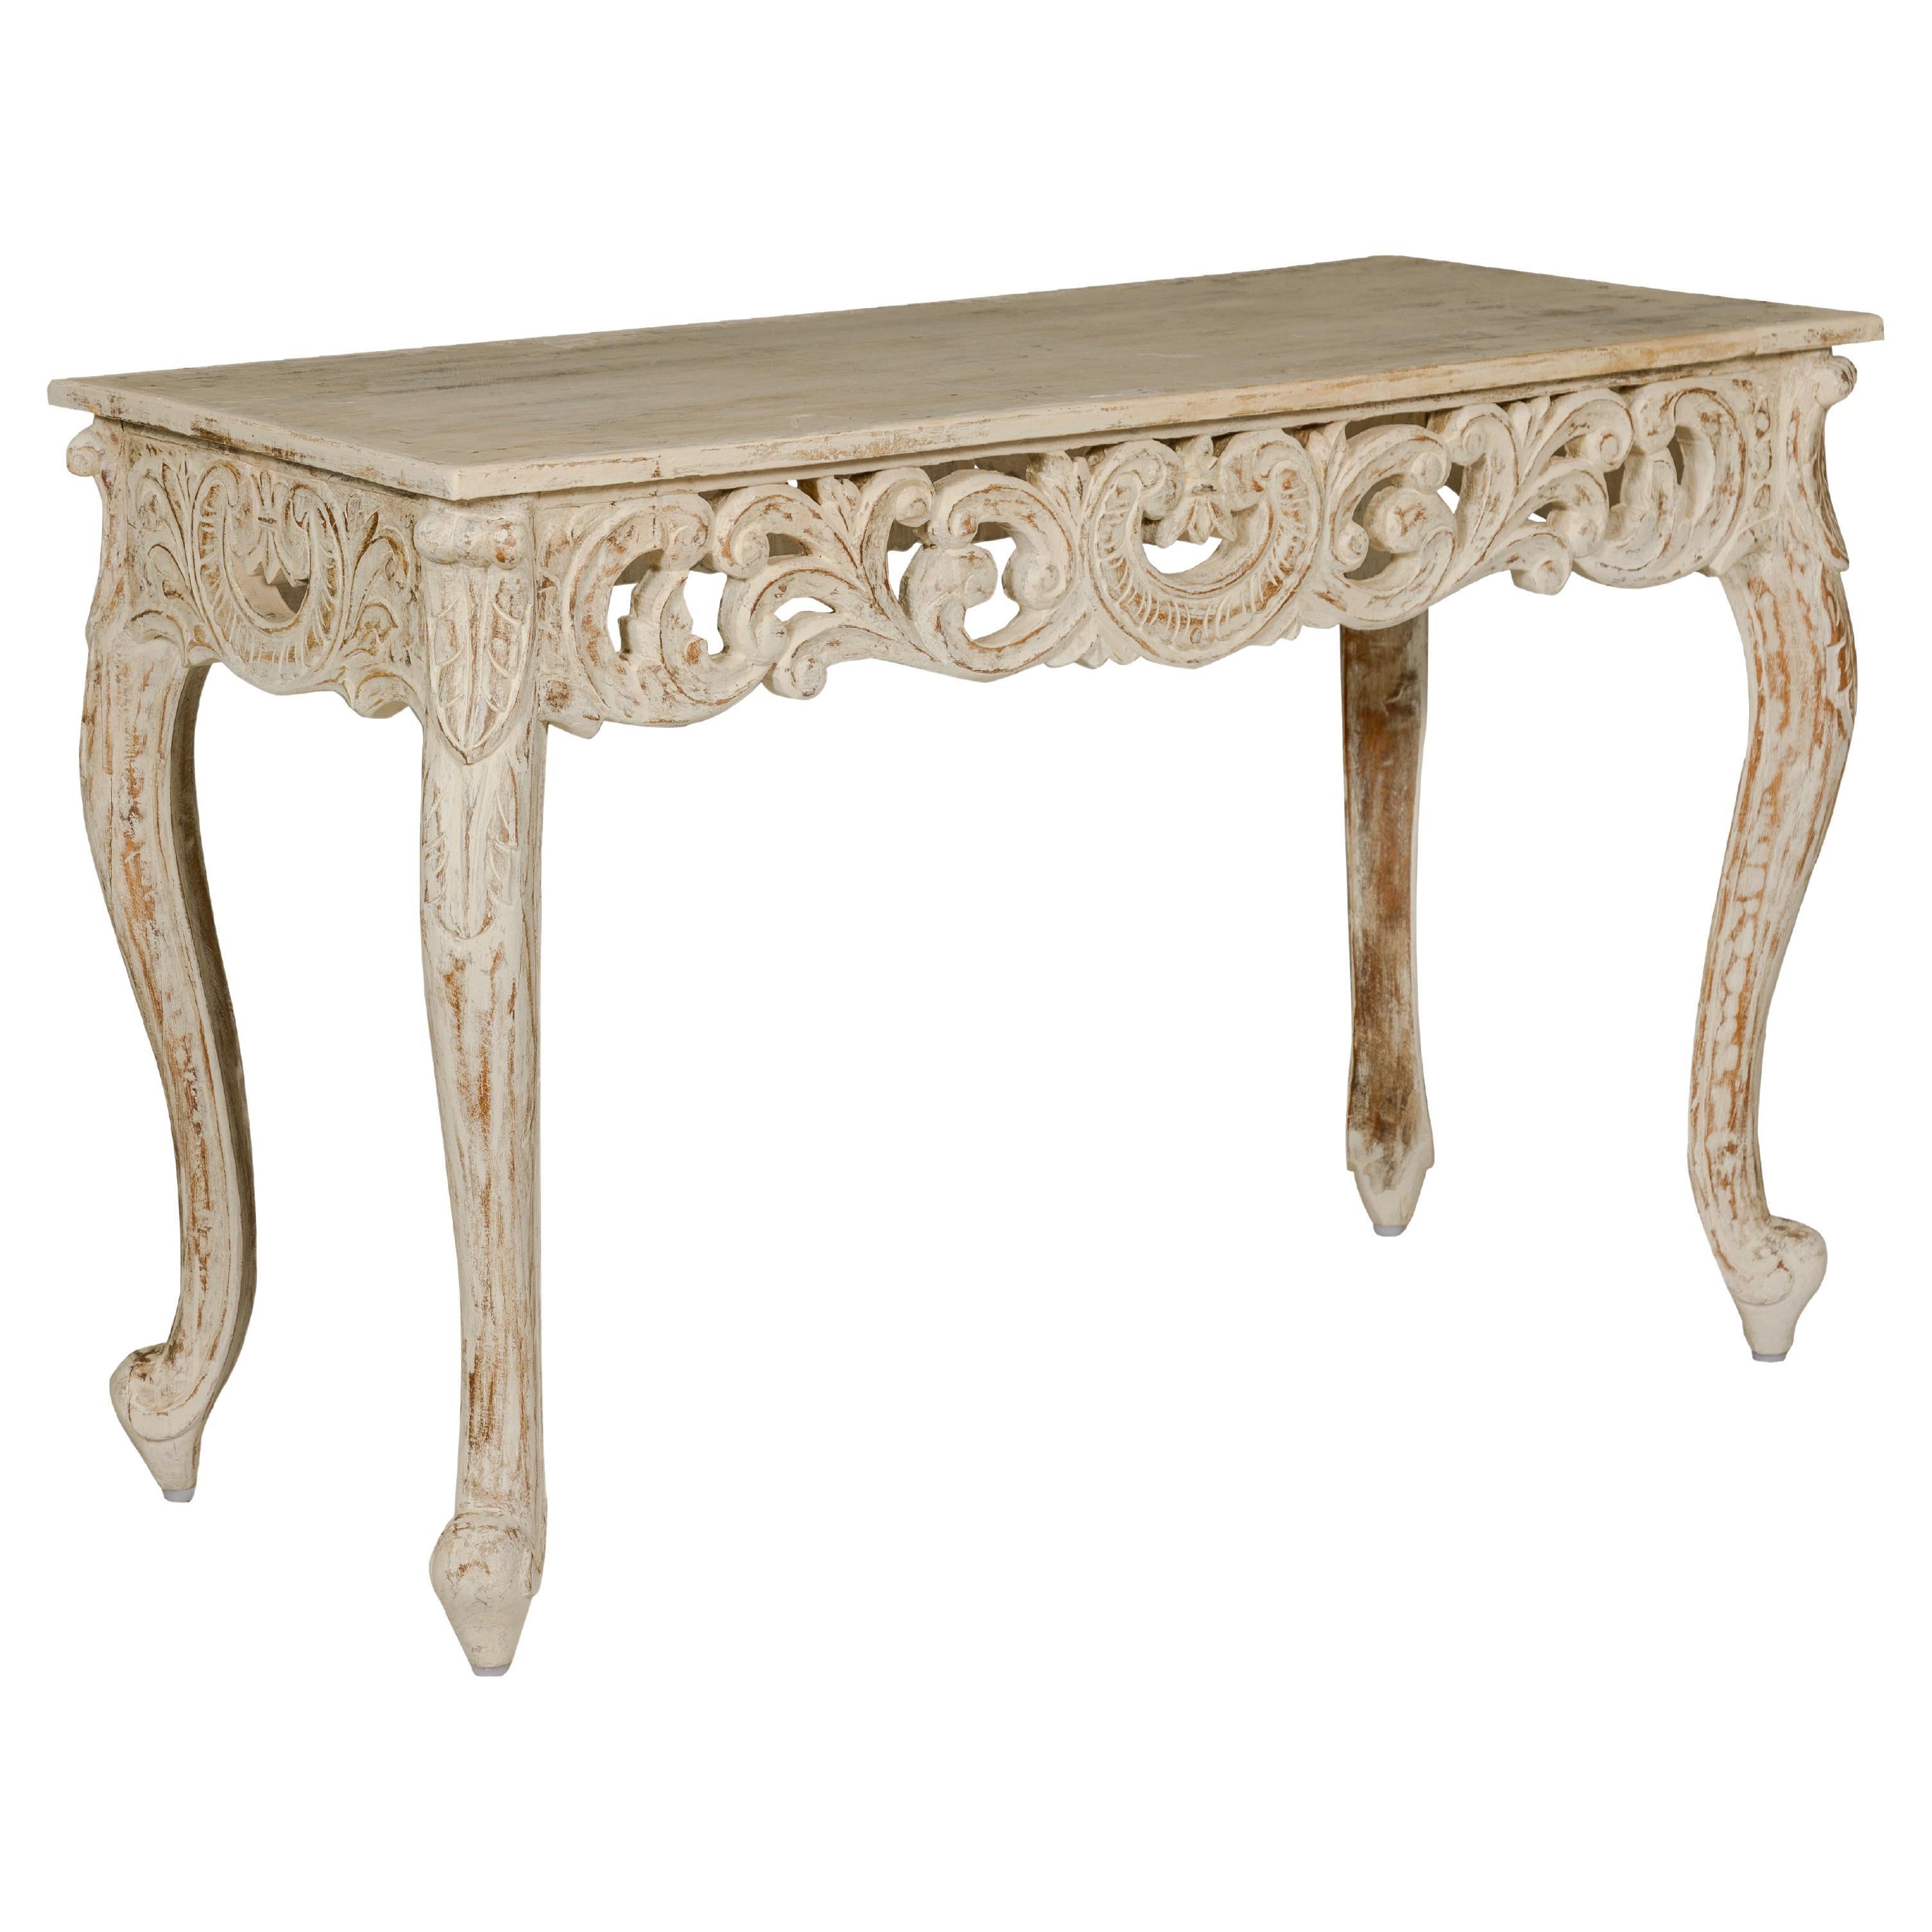 Table console peinte de style rococo avec tablier sculpté et finition vieillie